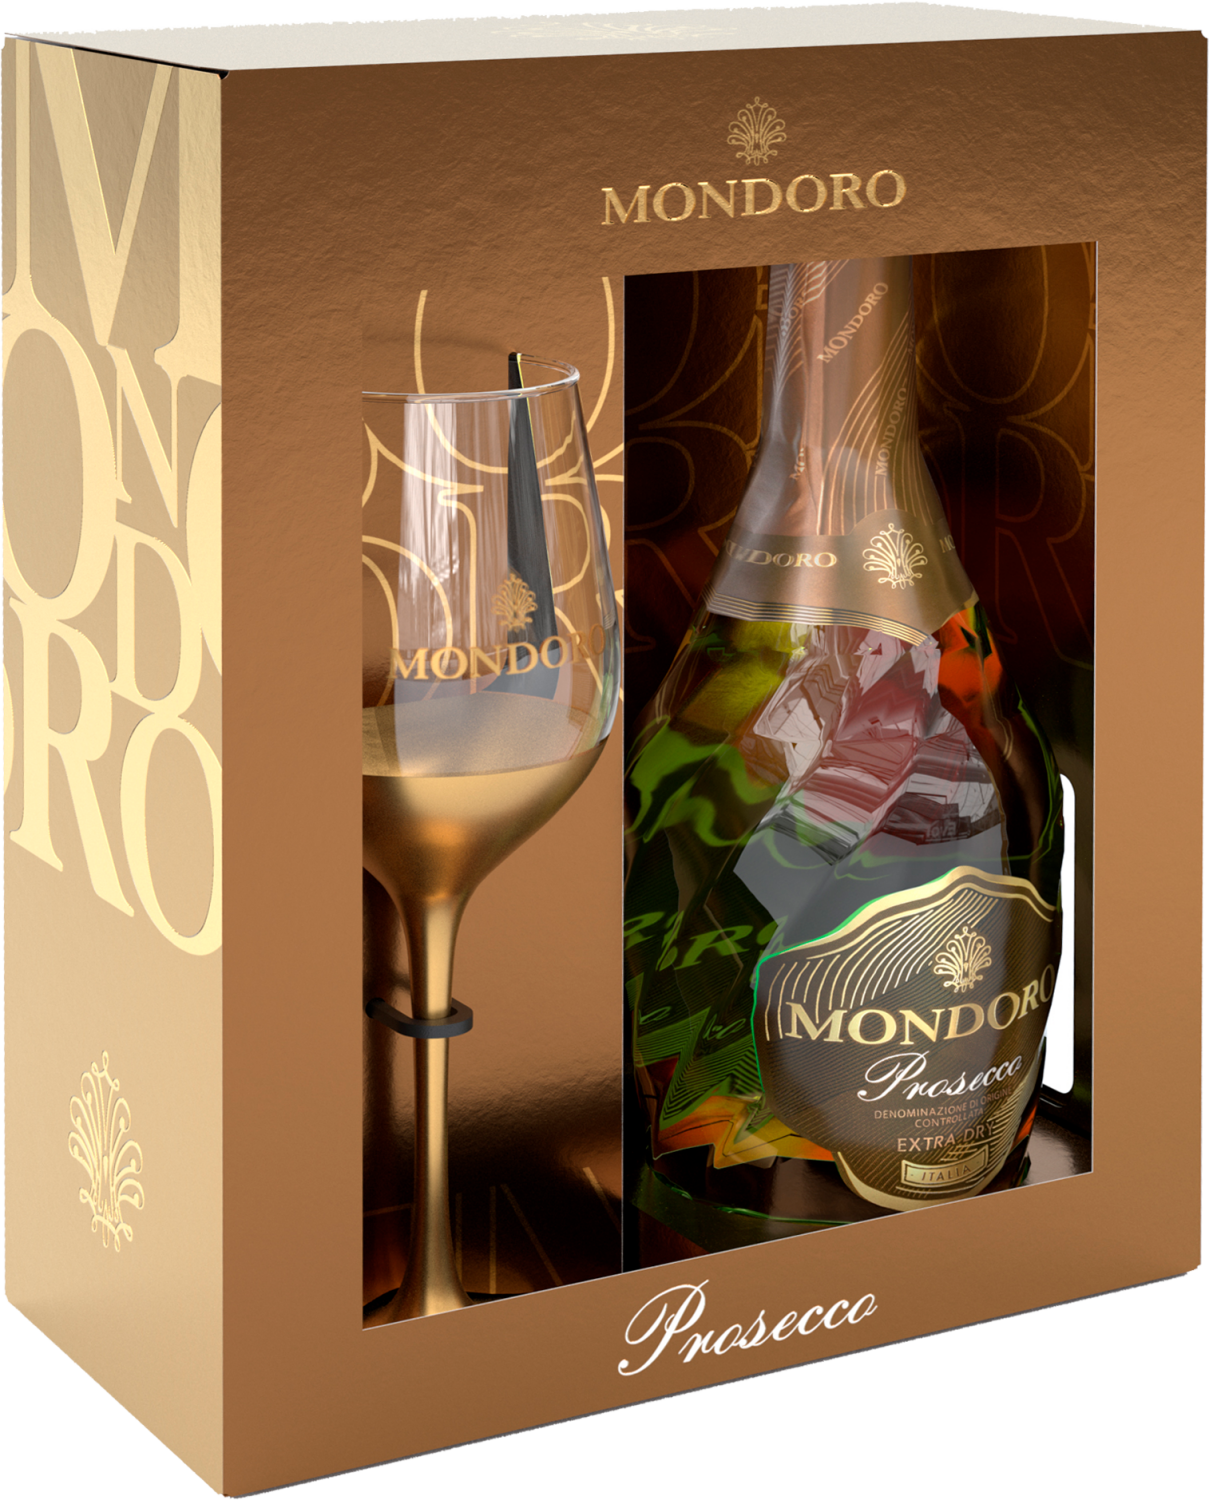 Mondoro Prosecco DOC Campari (gift box with glass) la gioiosa rose millesimato prosecco doc